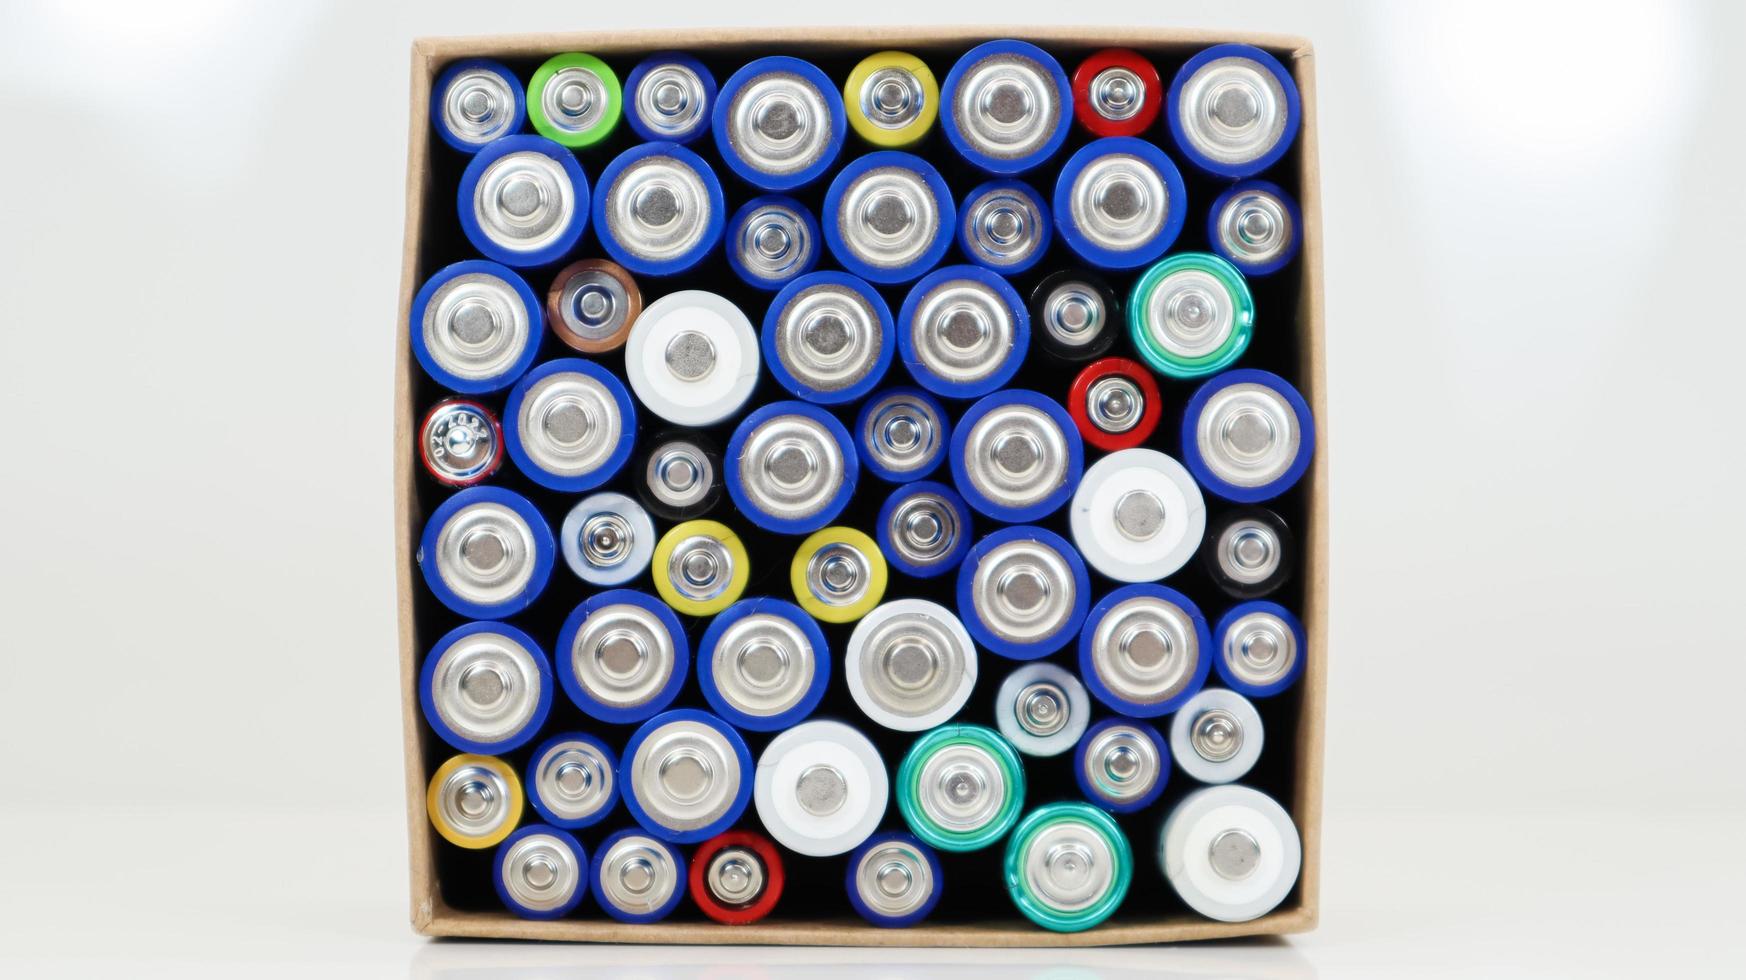 vista superior del fondo de pilas aaa aa y pilas recargables. elección de baterías. concepto de suministro y reciclaje de energía. texturas de elementos eléctricos empaquetados juntos en una caja. foto